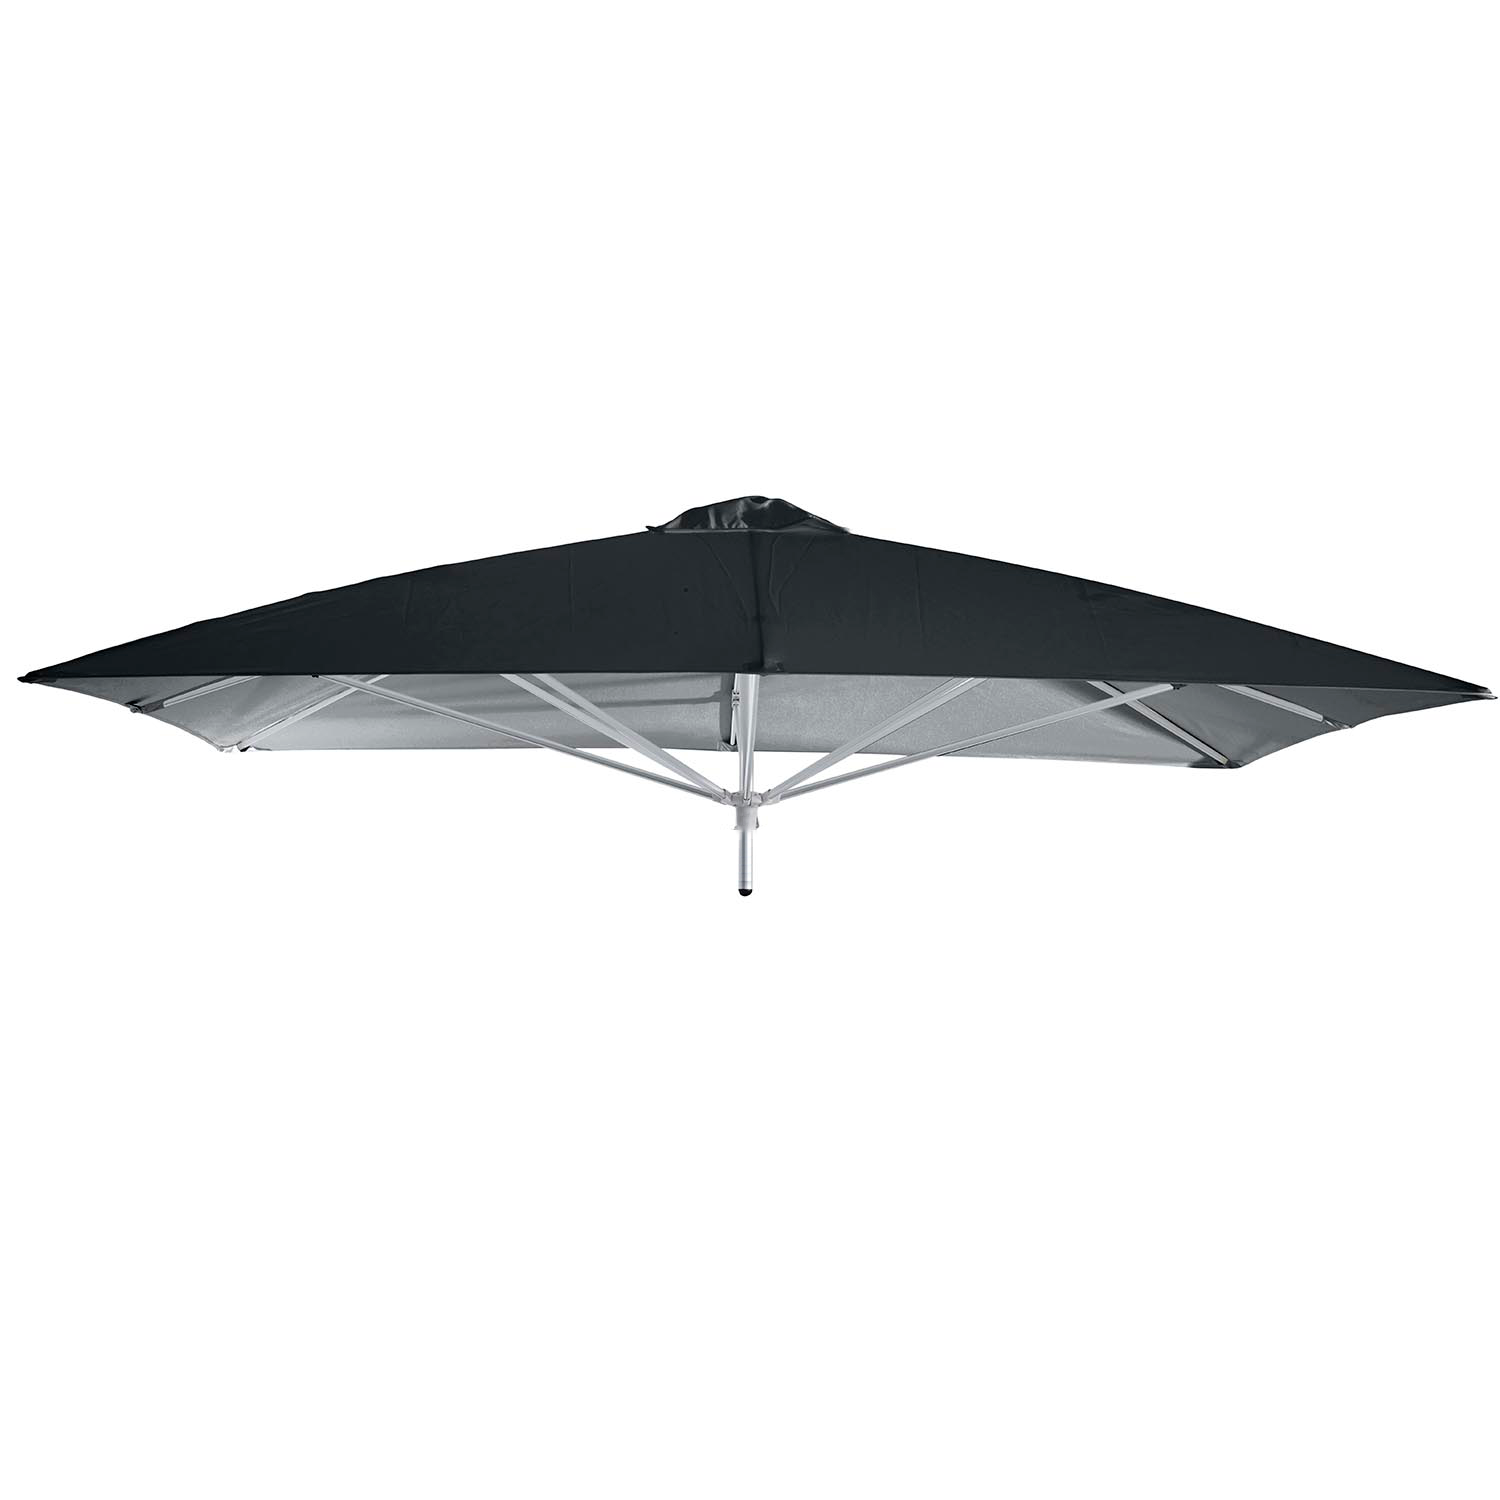 Paraflex Classic parasolkap 190x190cm - Sunbrella (Black) 